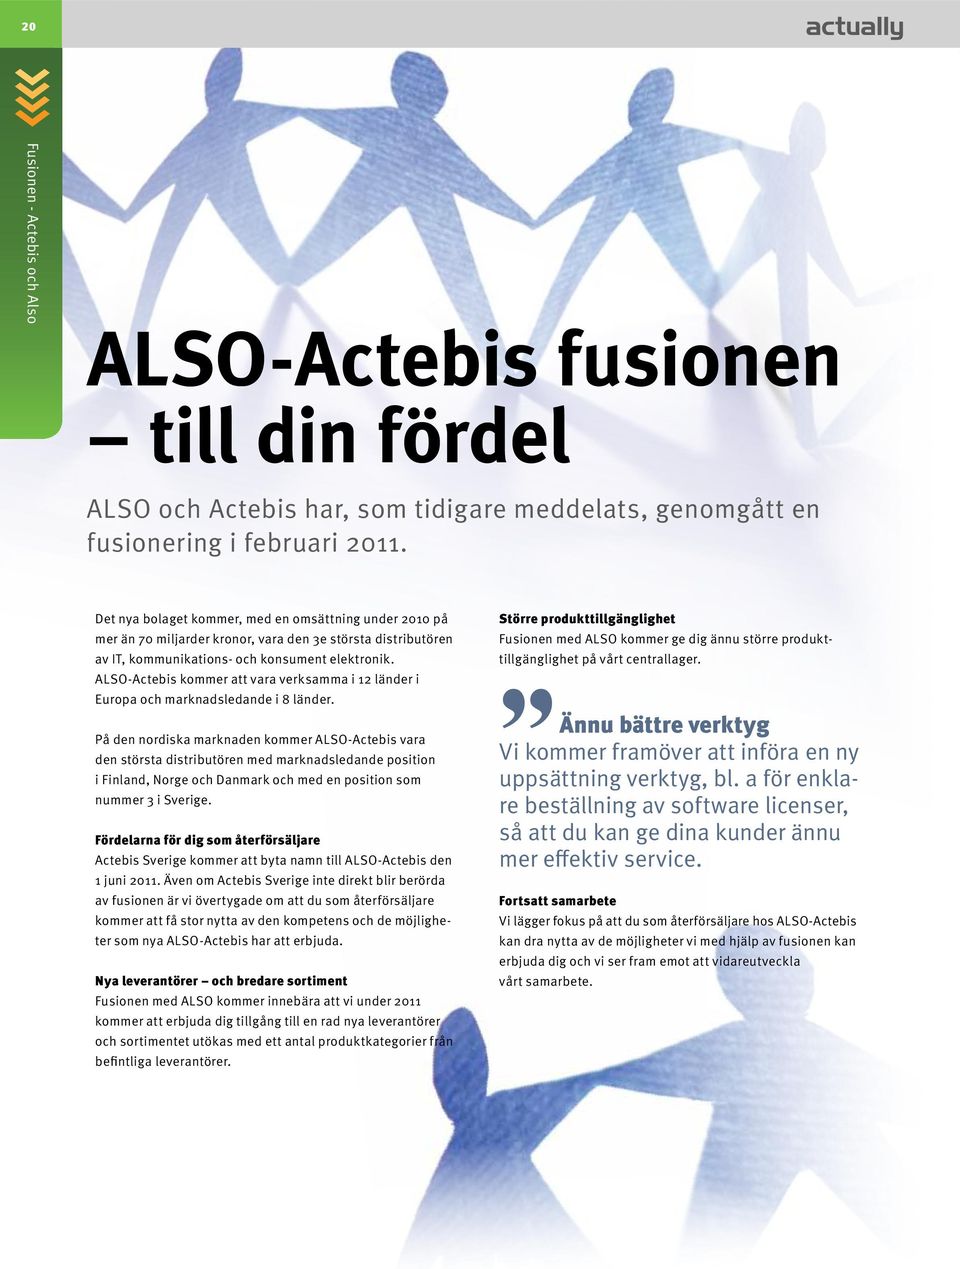 ALSO-Actebis kommer att vara verksamma i 12 länder i Europa och marknadsledande i 8 länder.